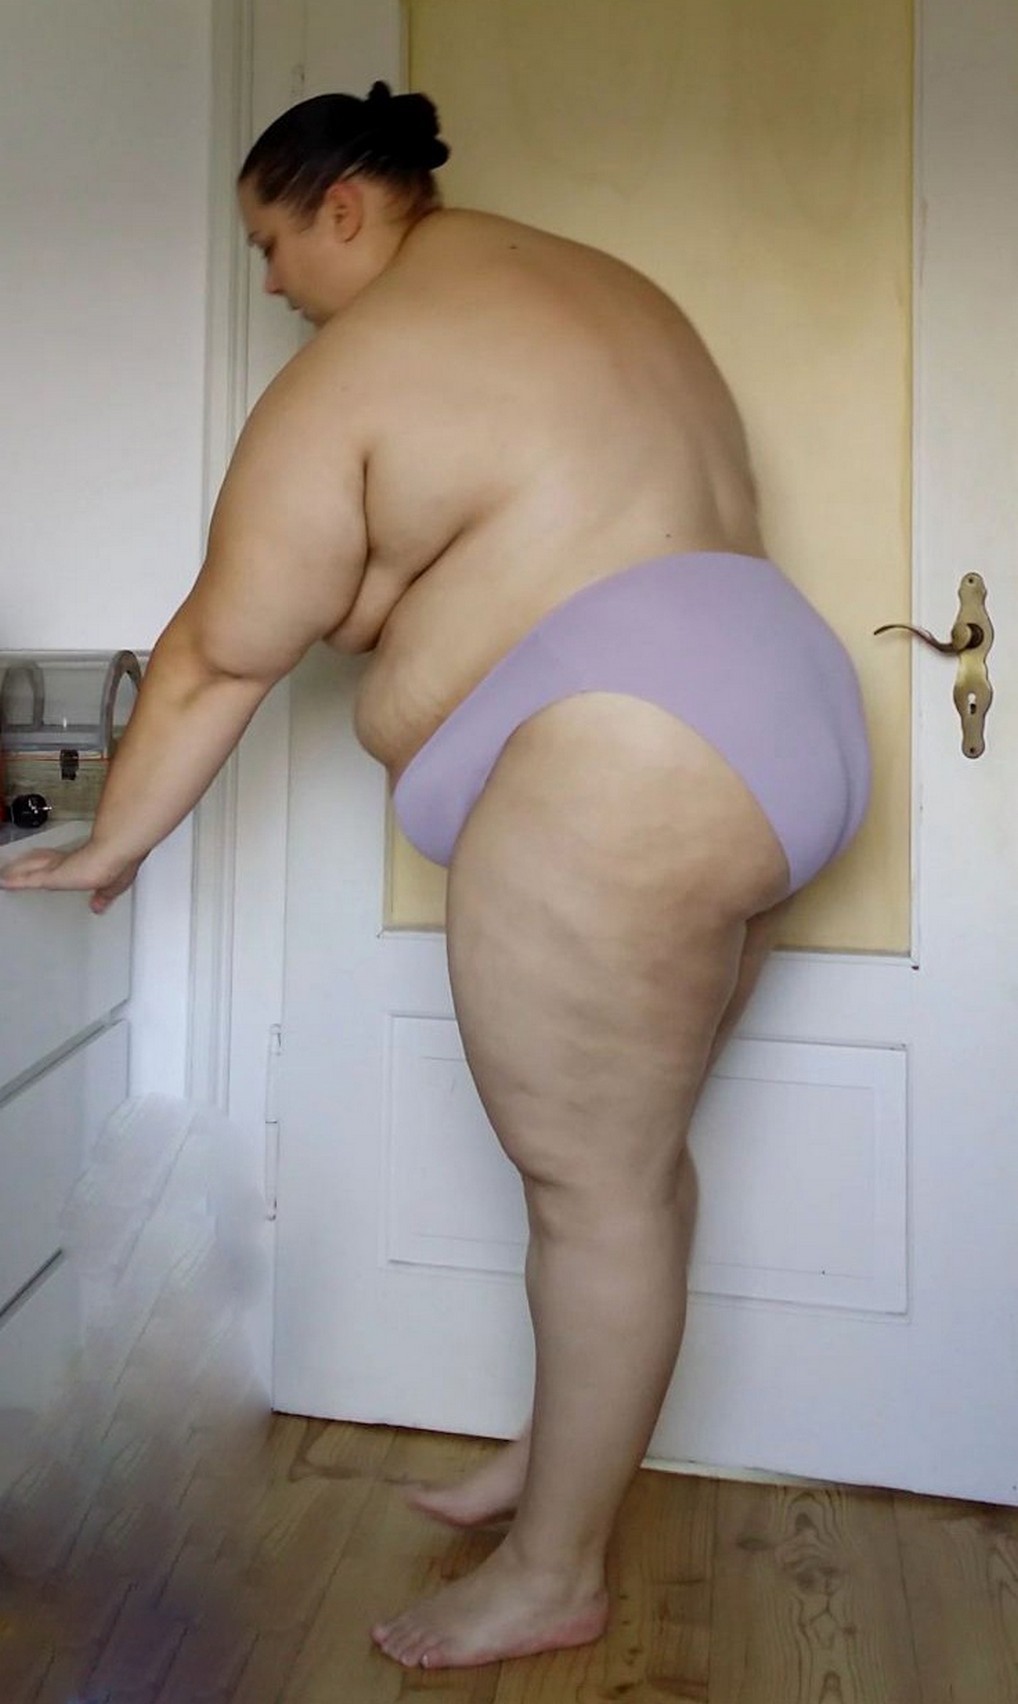 Free porn pics of Dumb Fat Pig Slut Wife Exposed 8 of 11 pics